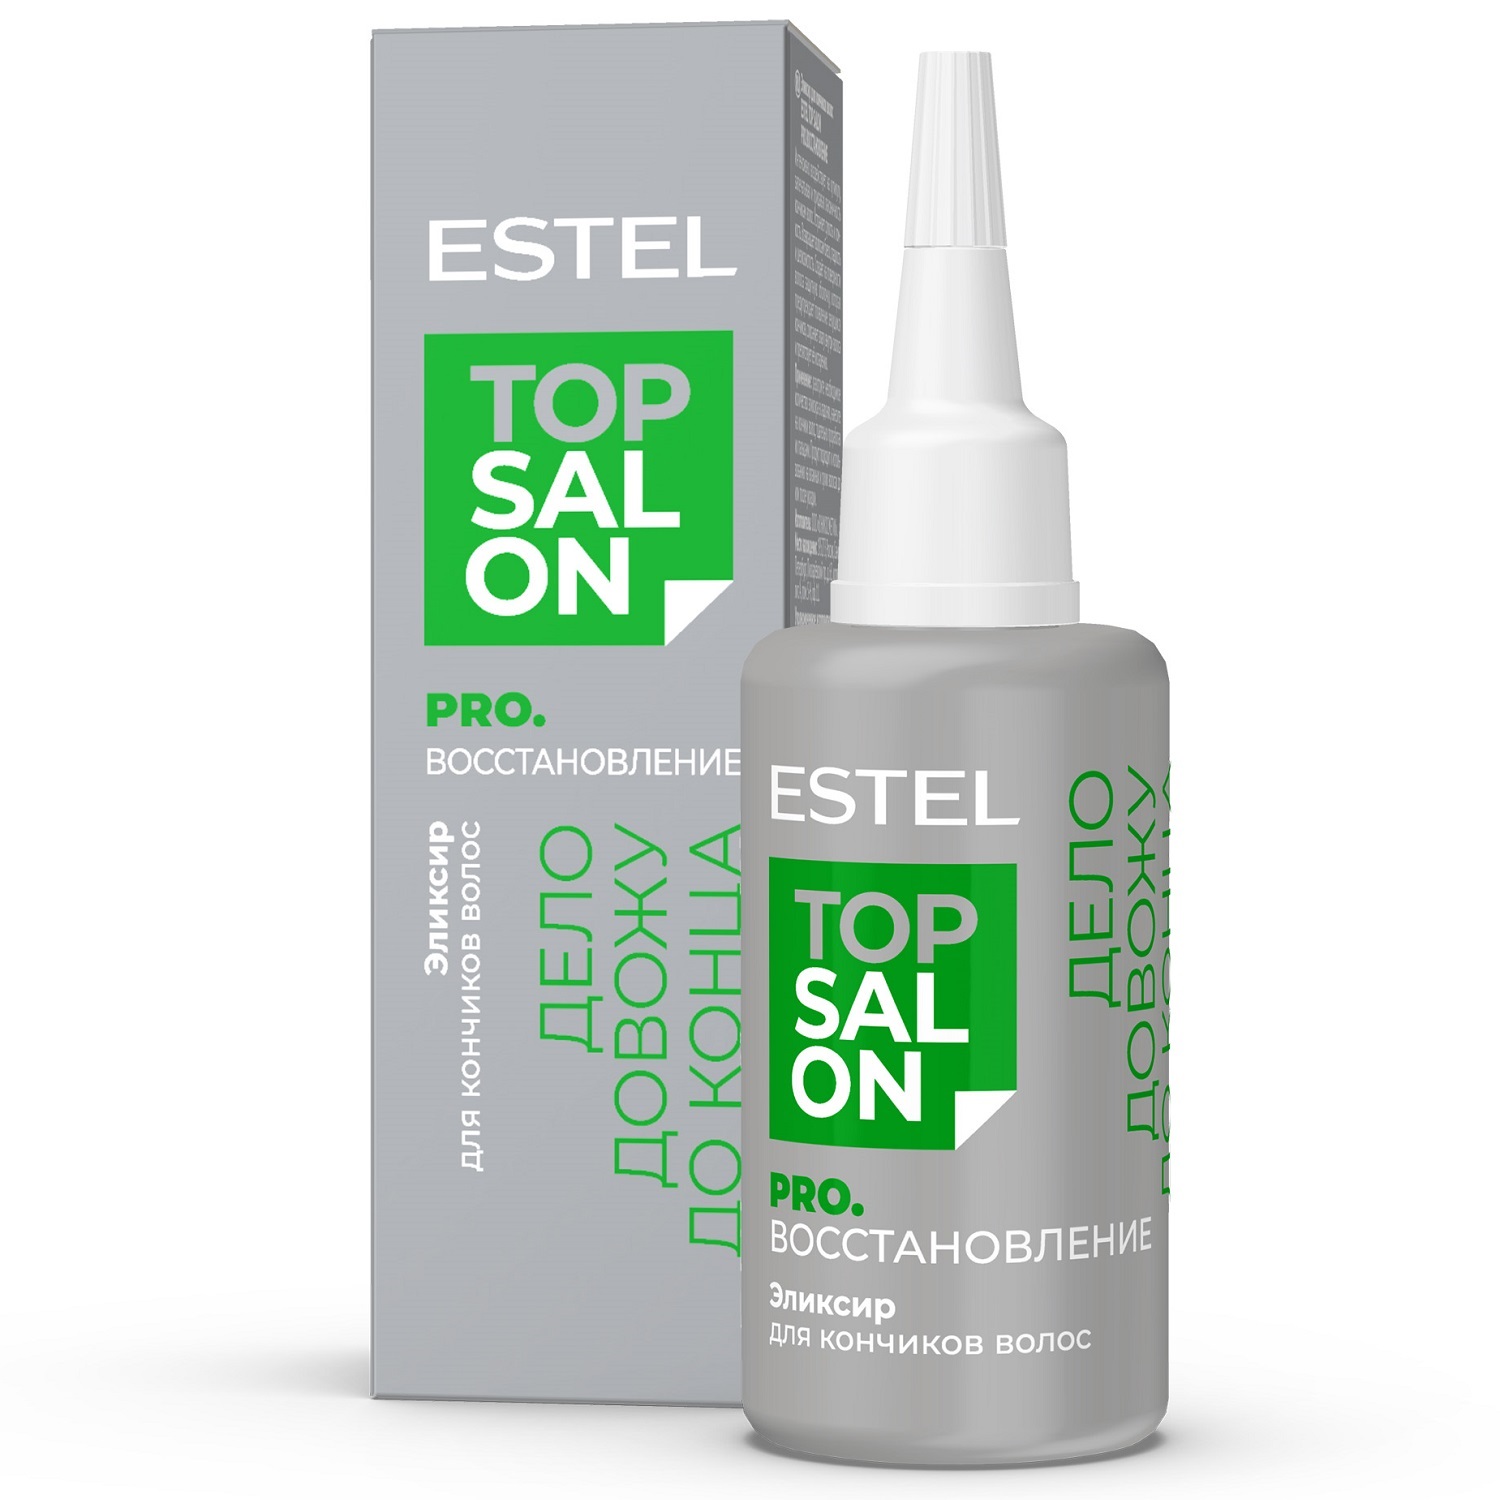 Estel Эликсир для кончиков повреждённых, пористых и ломких волос, 30 мл (Estel, Top Salon)